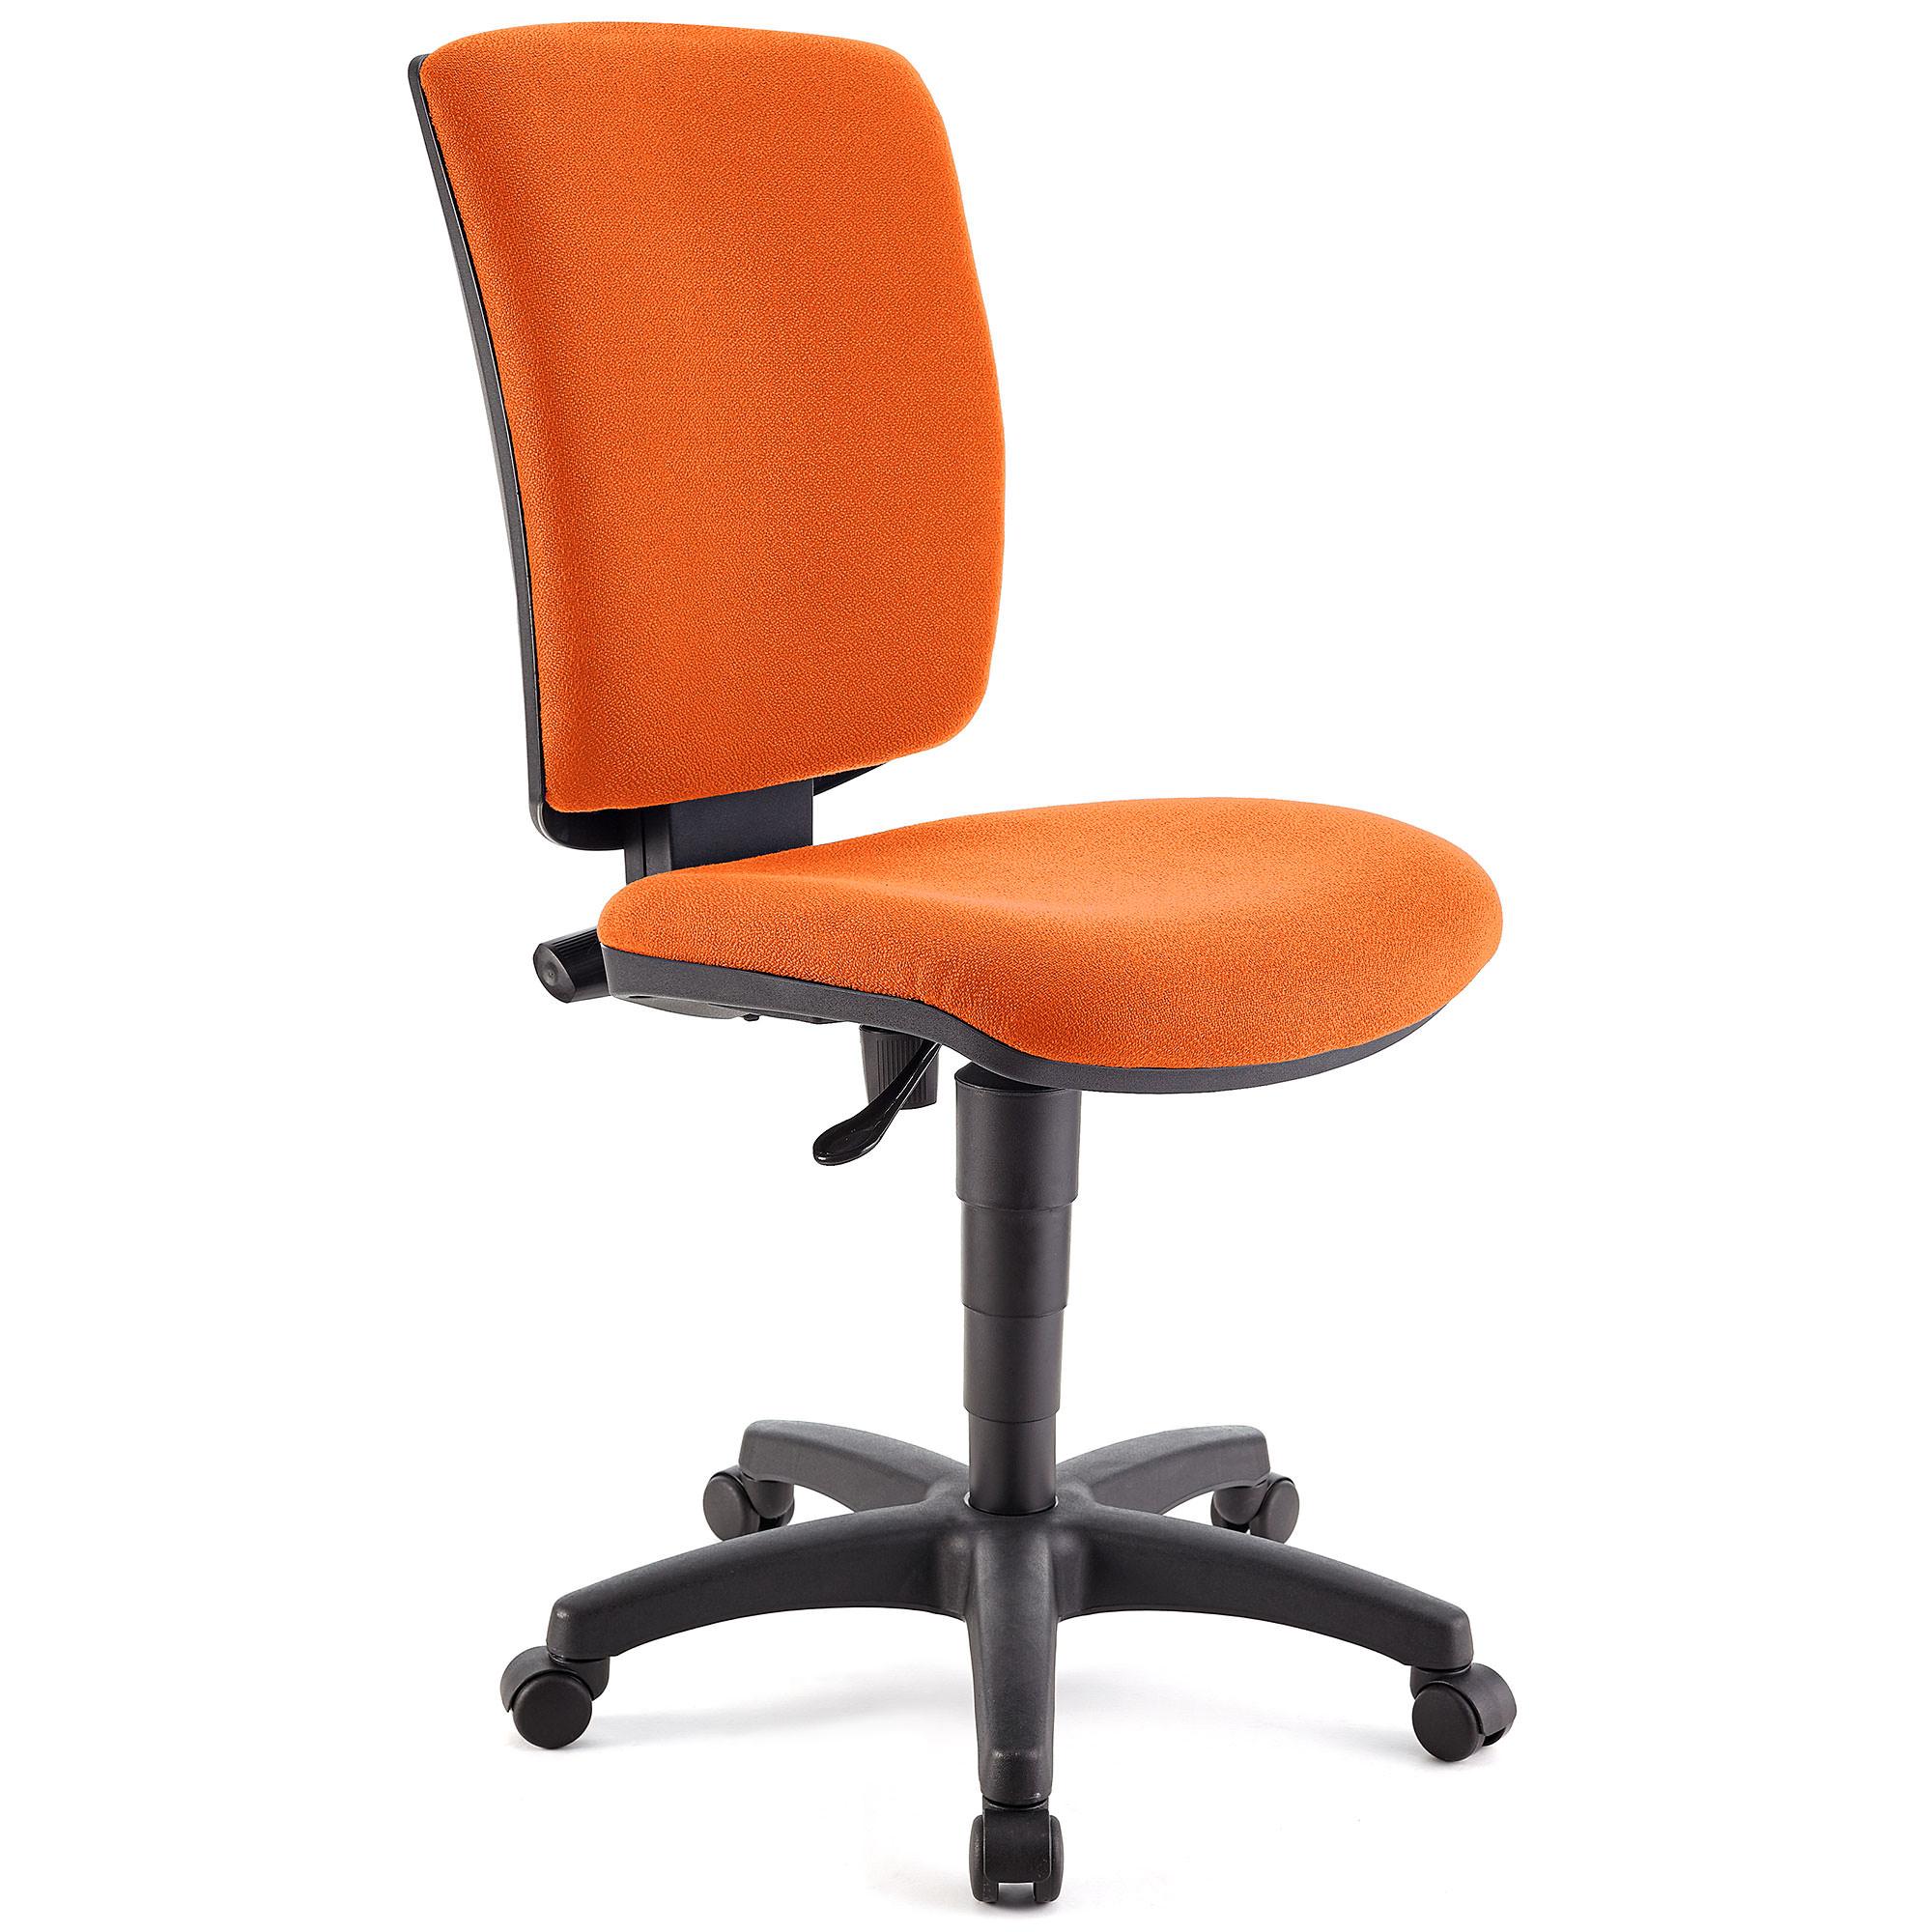 Bürostuhl ATLAS OHNE ARMLEHNEN STOFF, verstellbare Rückenlehne, dicke Polsterung, Farbe Orange